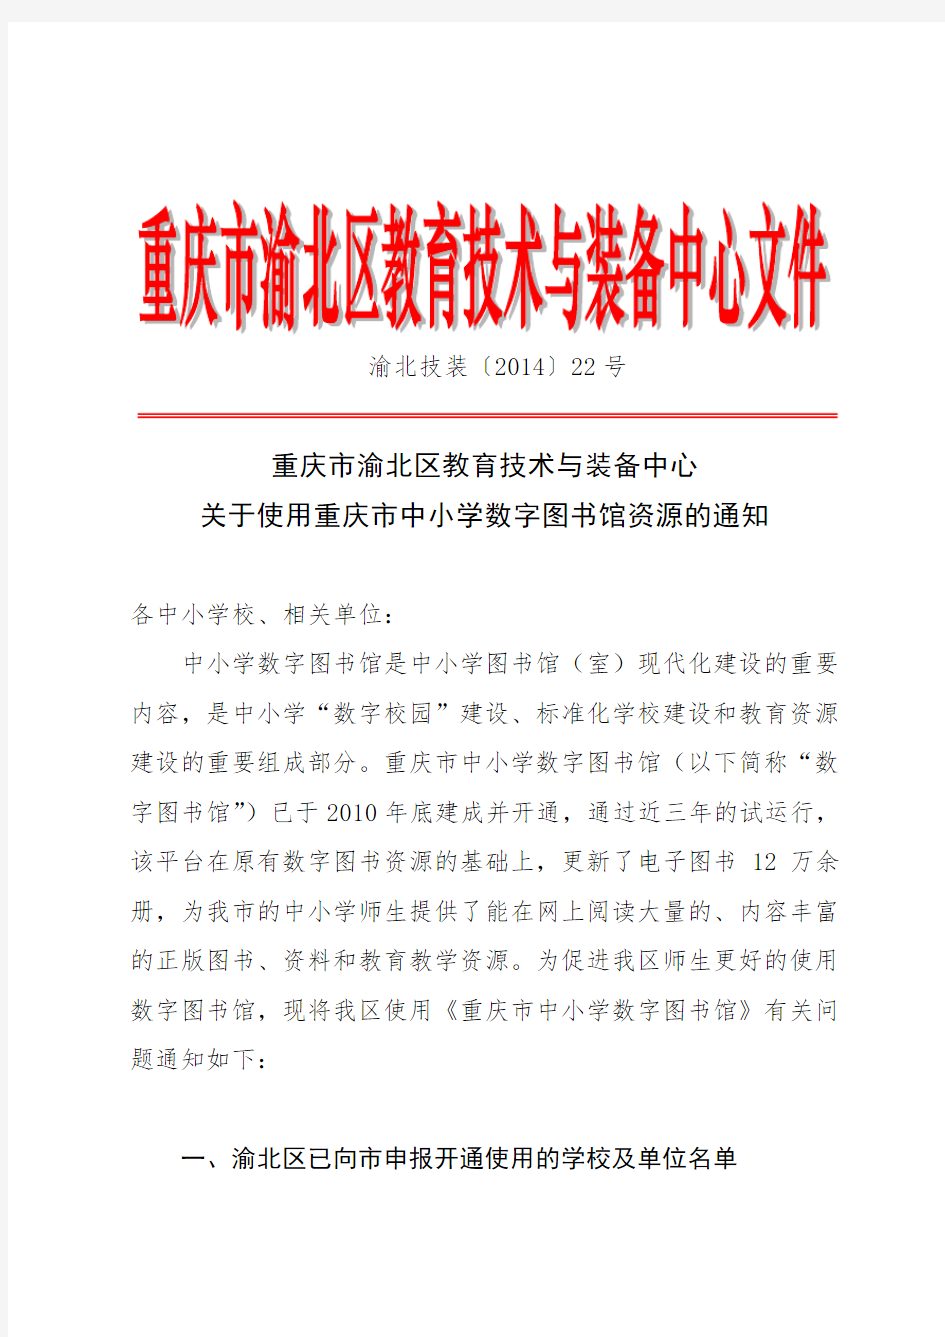 关于使用重庆市中小学数字图书馆资源的通知